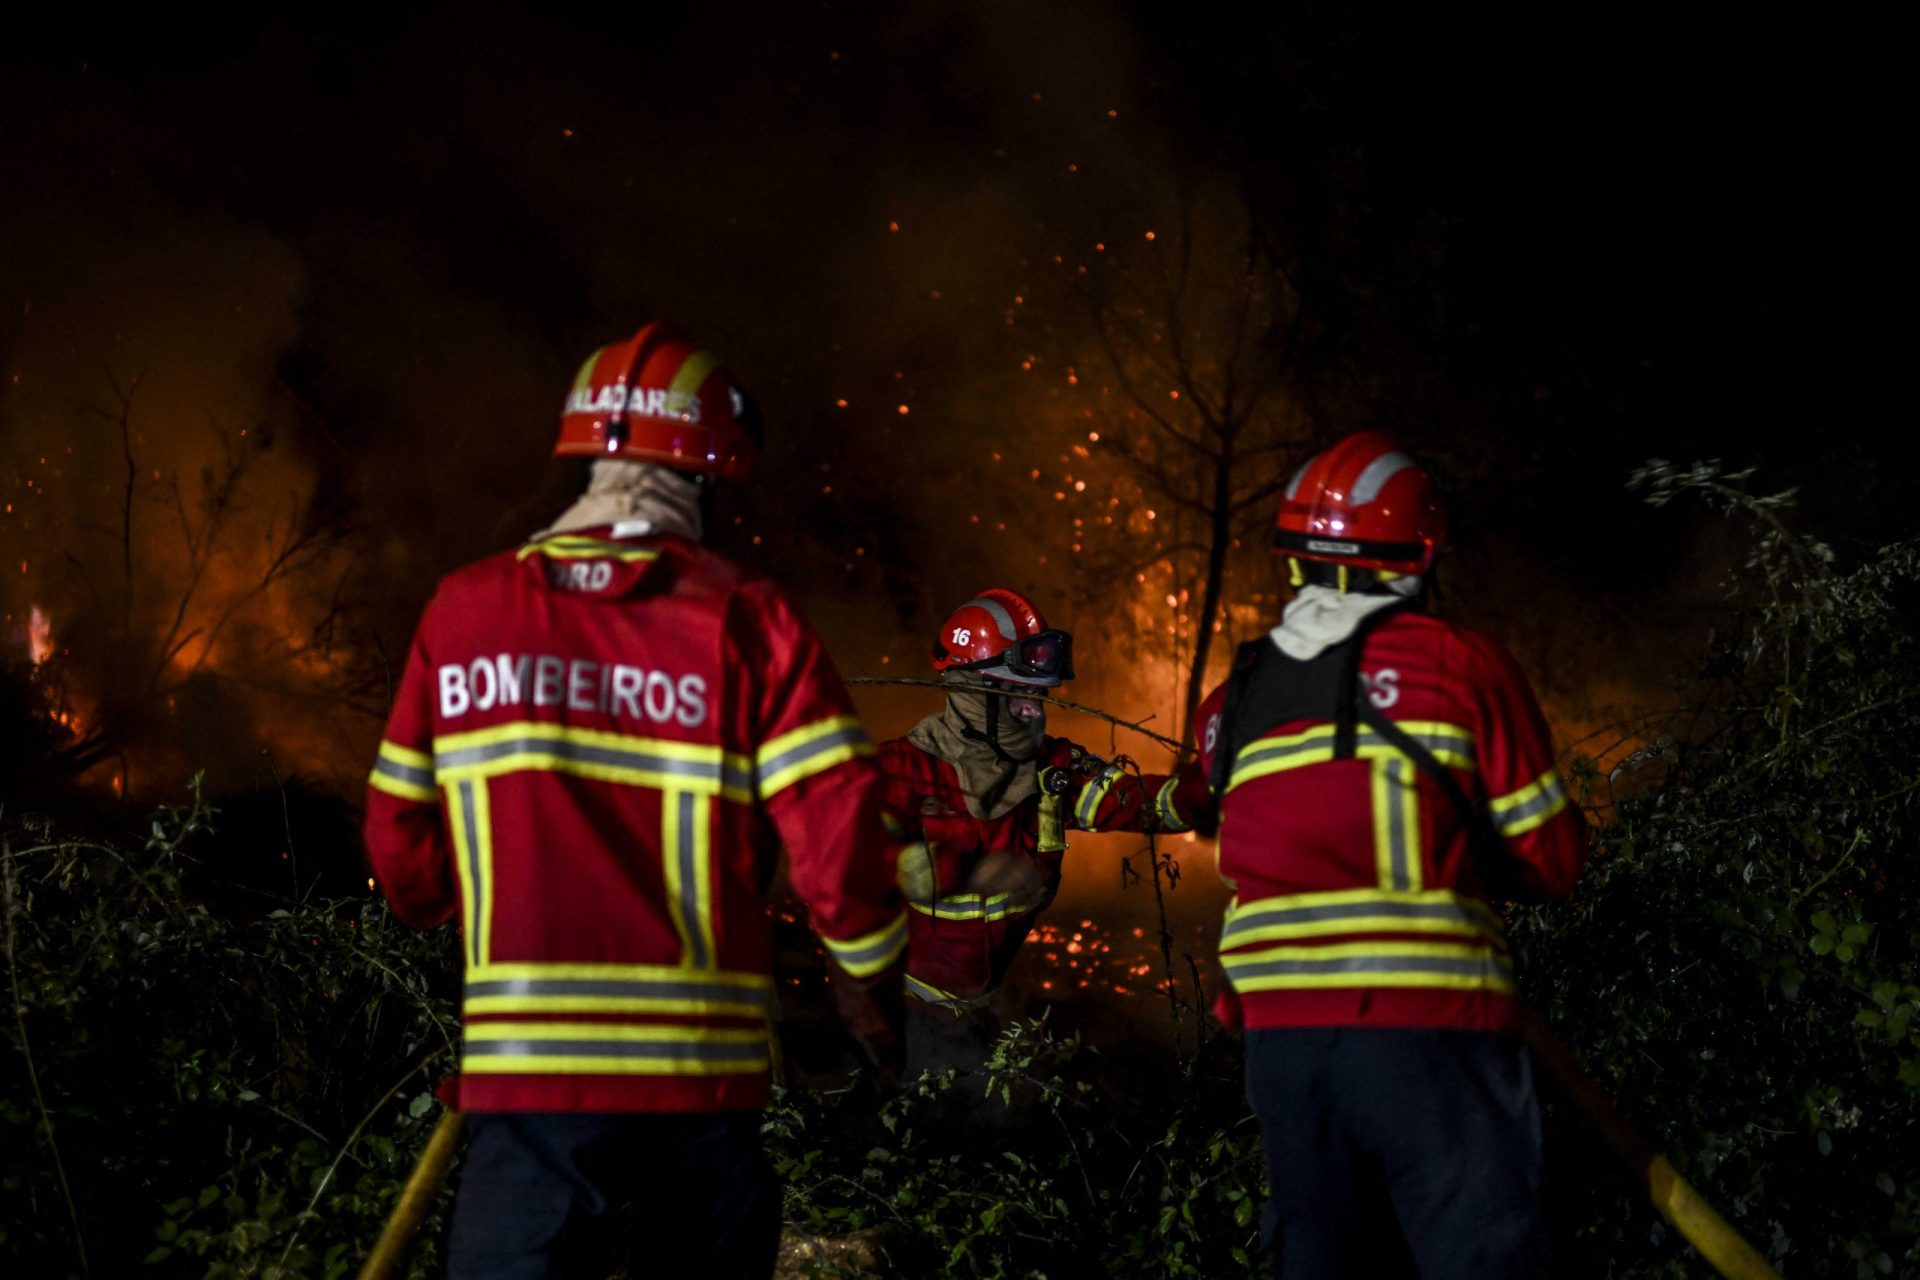 Proteção Civil particularmente preocupada com incêndios de Castelo Branco, Murça e Bustelo